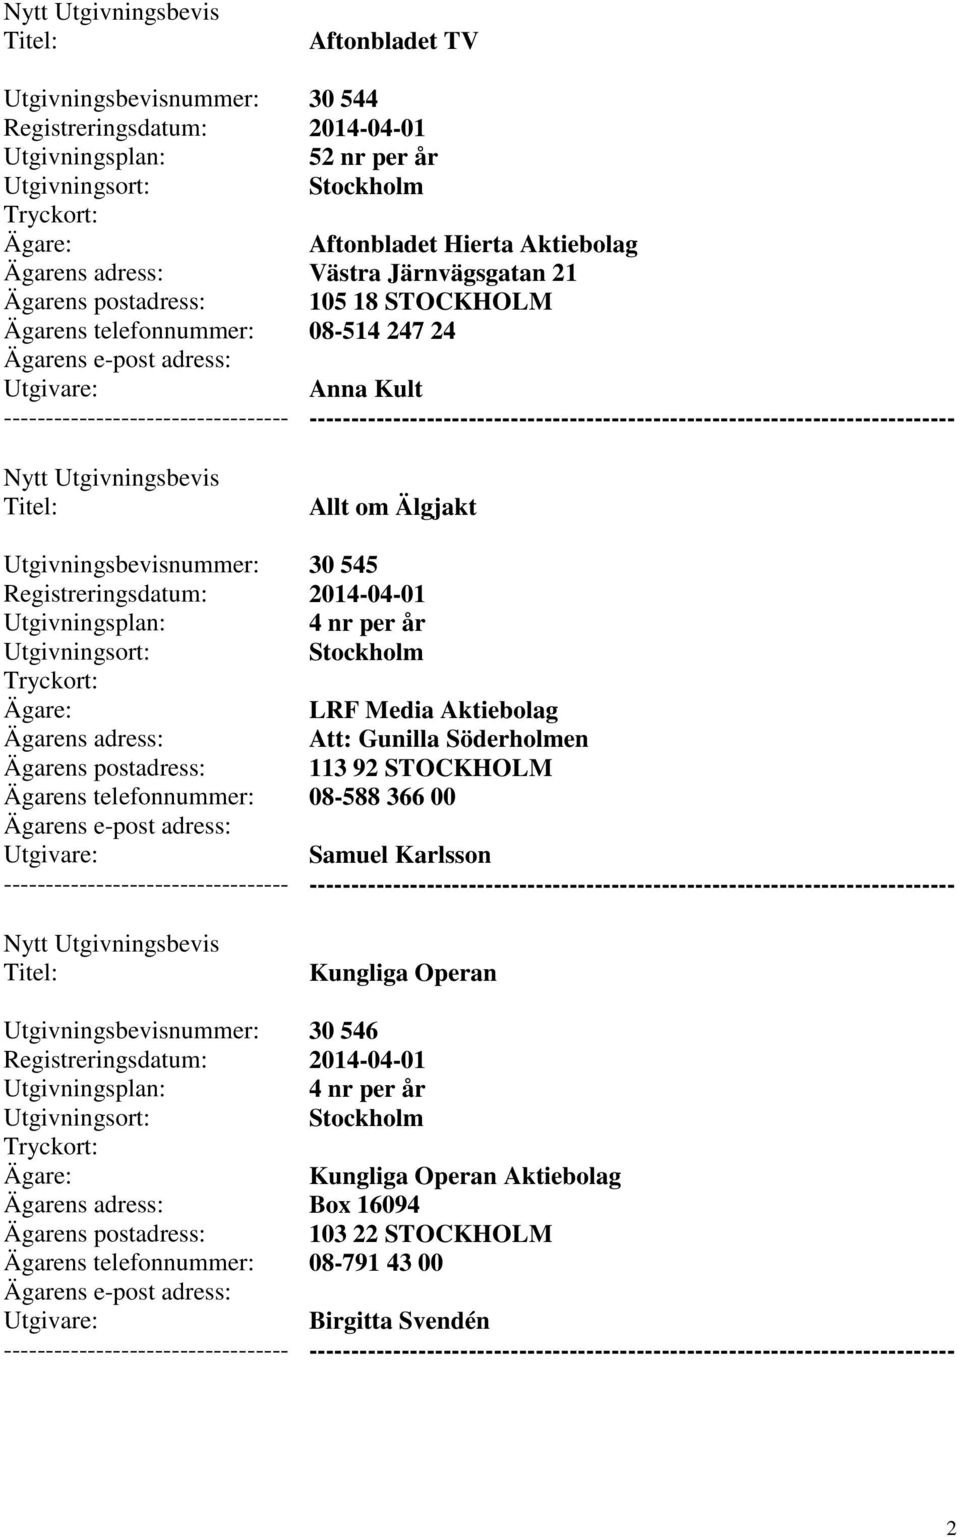 Gunilla Söderholmen 113 92 STOCKHOLM 08-588 366 00 Samuel Karlsson --------- Kungliga Operan 30